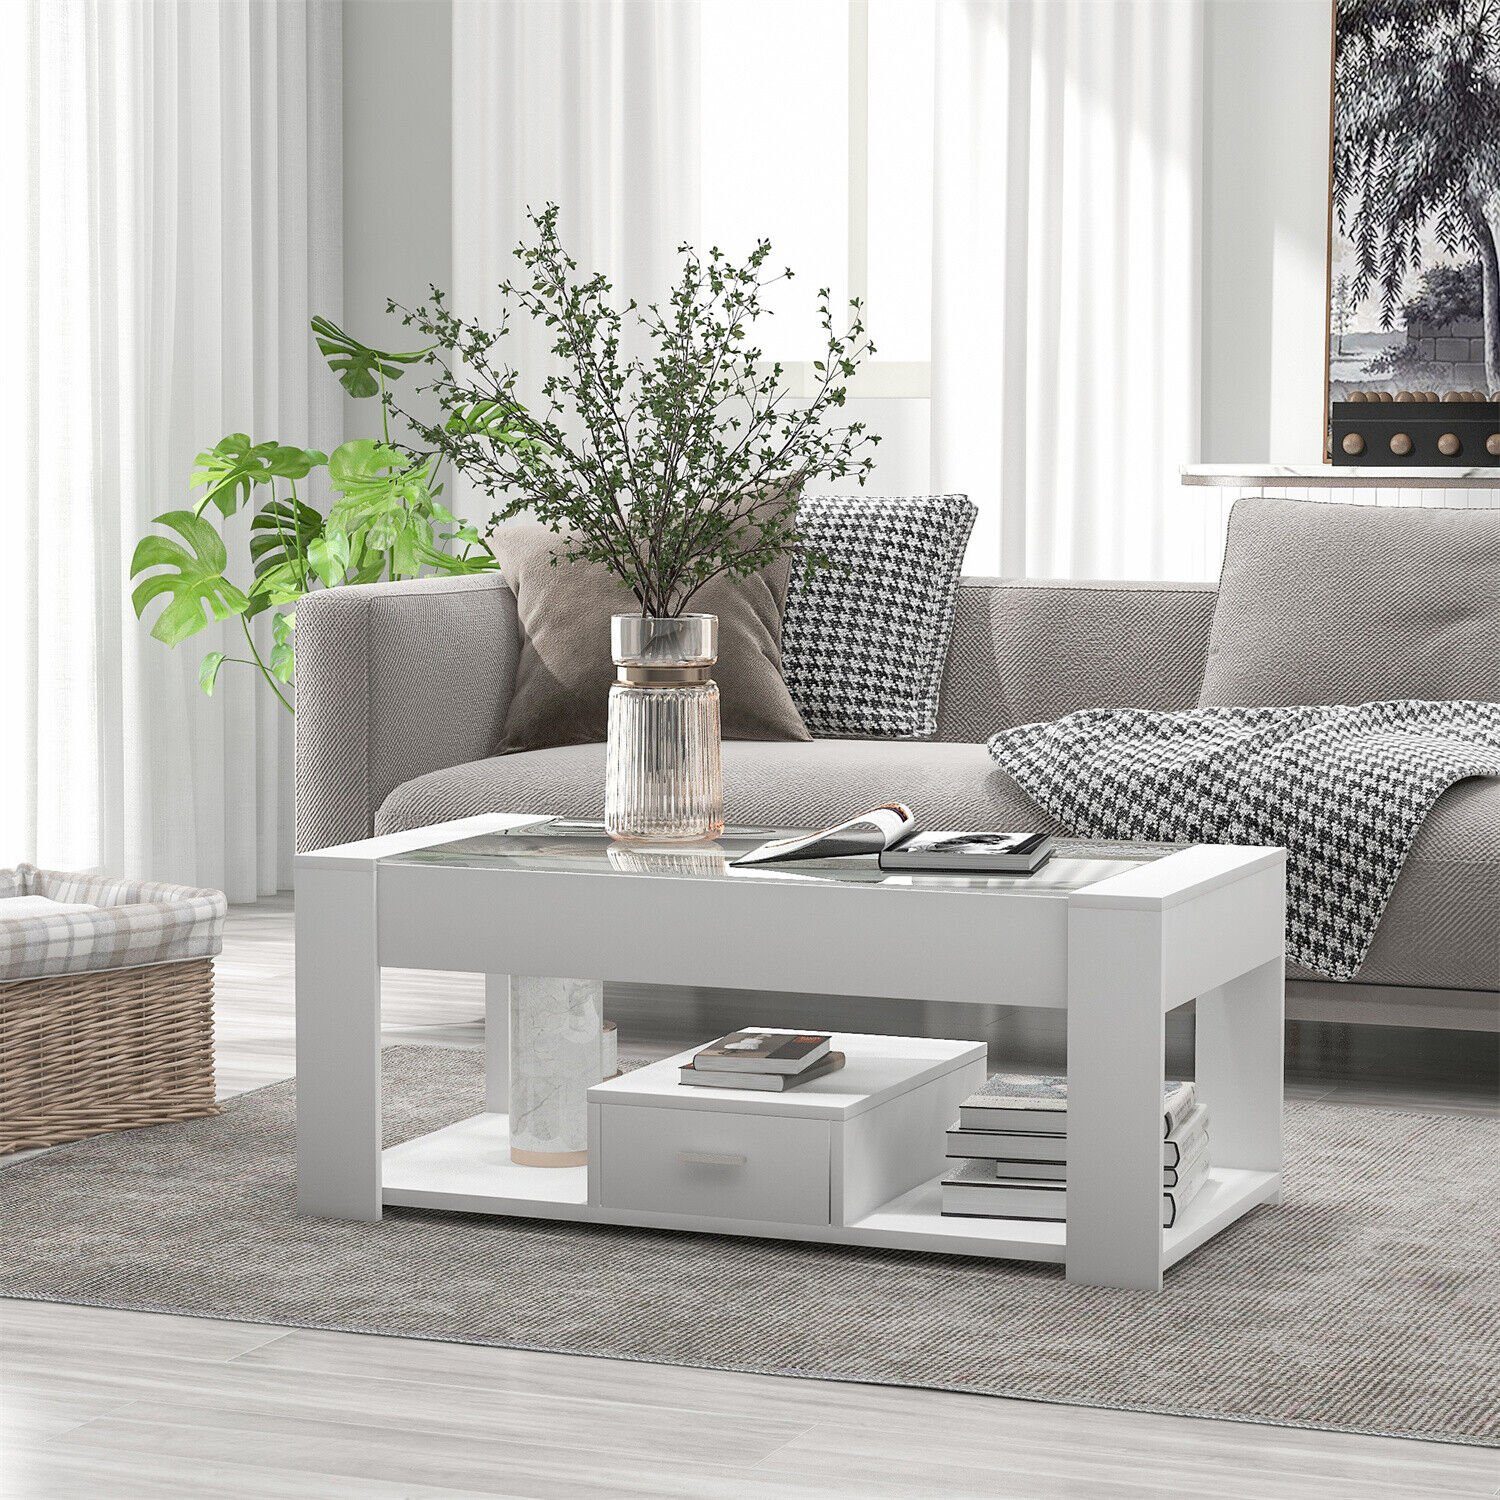 DOTMALL Tischsitz Couchtisch Weiß Wohnzimmer mit Glasplatte Stauraum